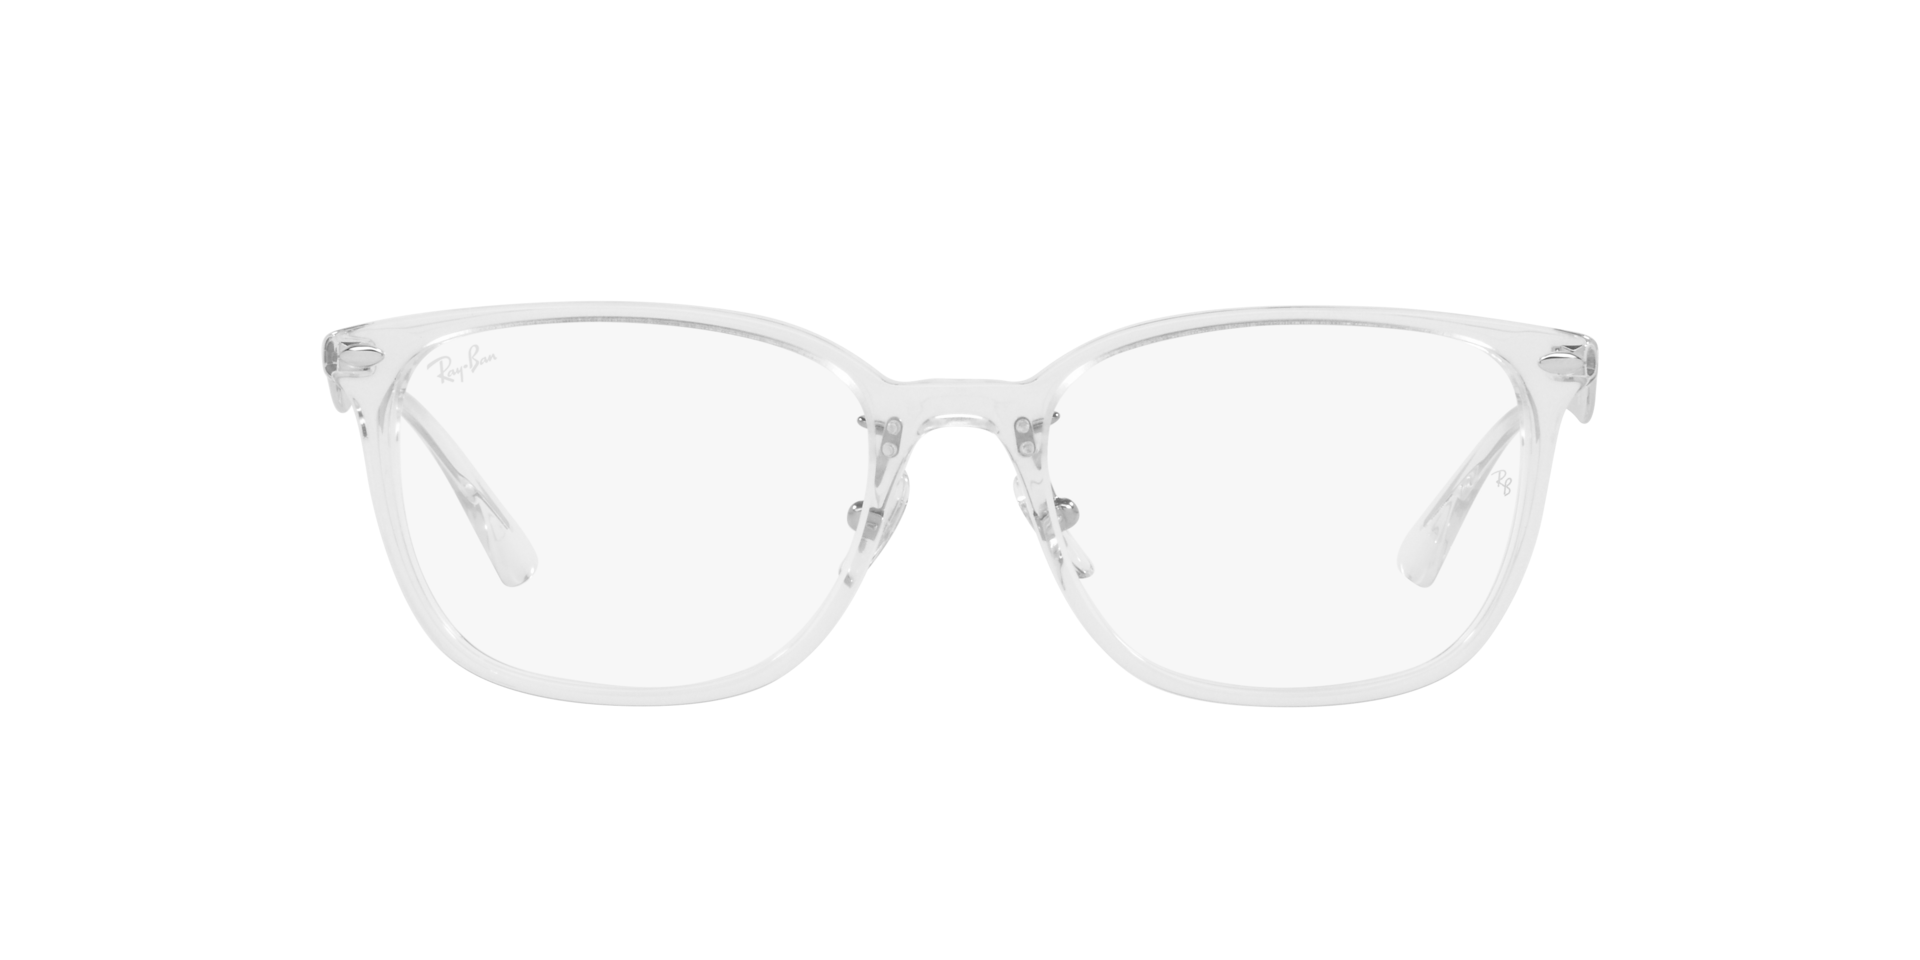 Ray Ban l 低奢細邊方框眼鏡 純透明